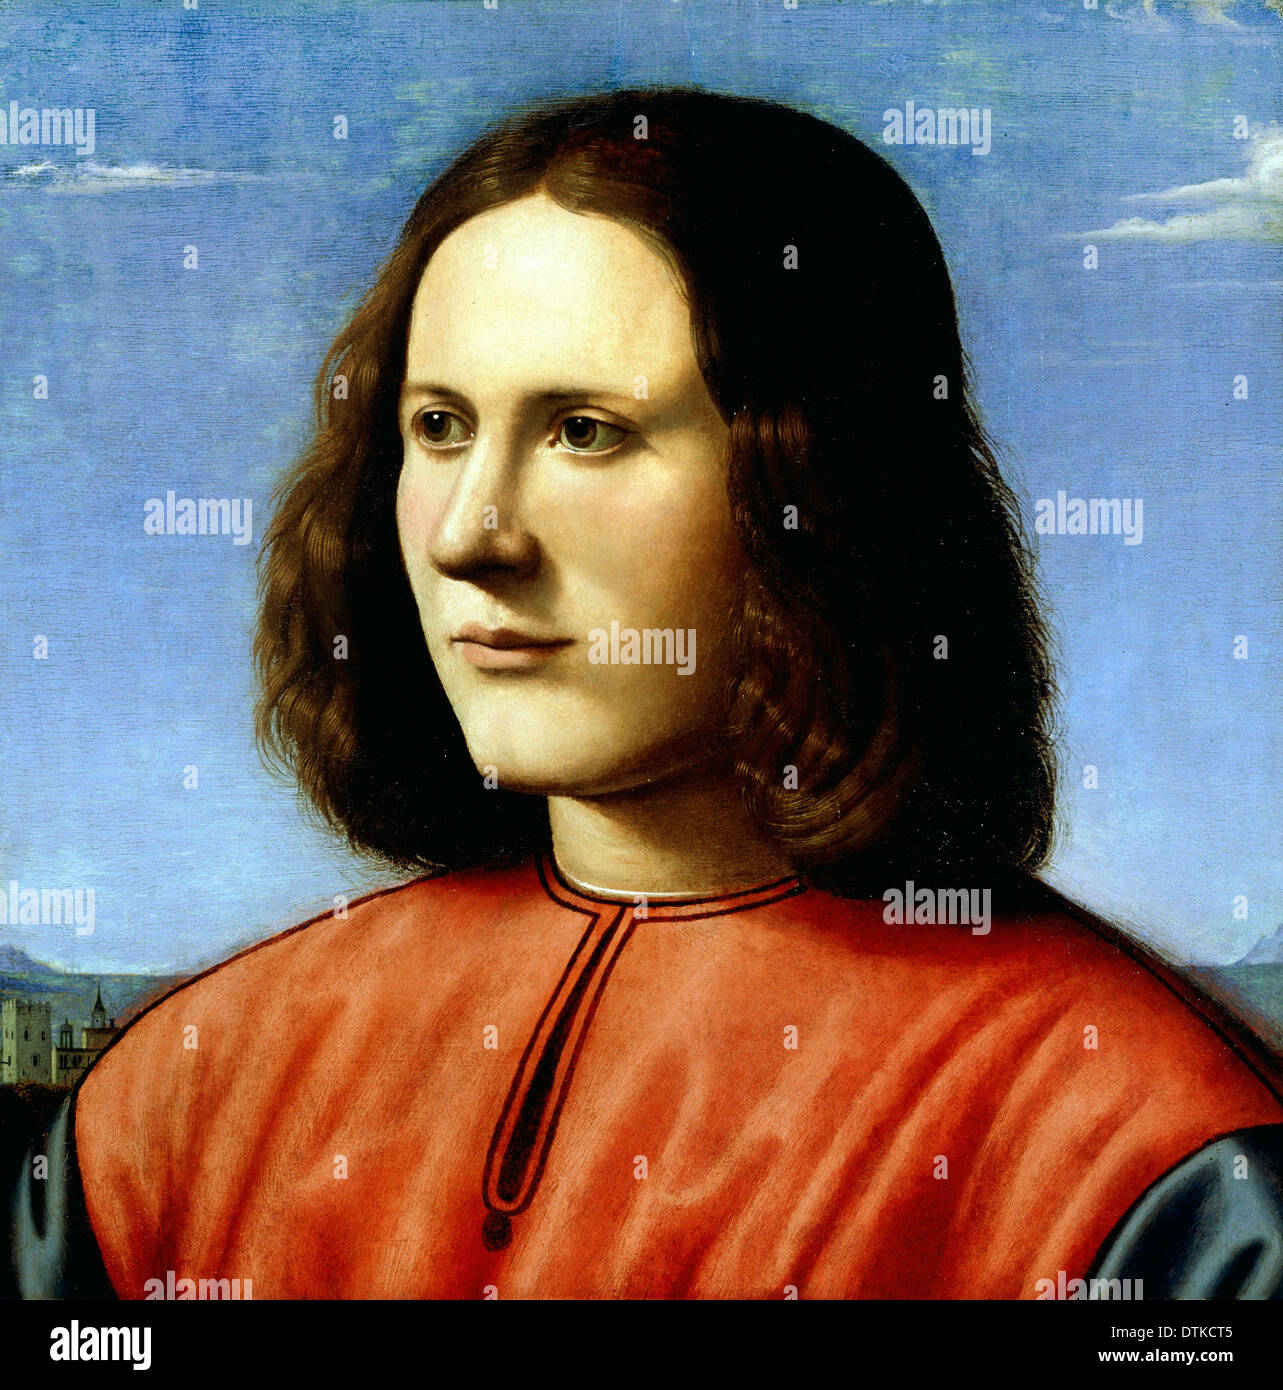 Piero di Cosimo, un jeune homme. Vers 1500. Huile sur panneau. Dulwich Picture Gallery, Londres, Royaume-Uni. Banque D'Images